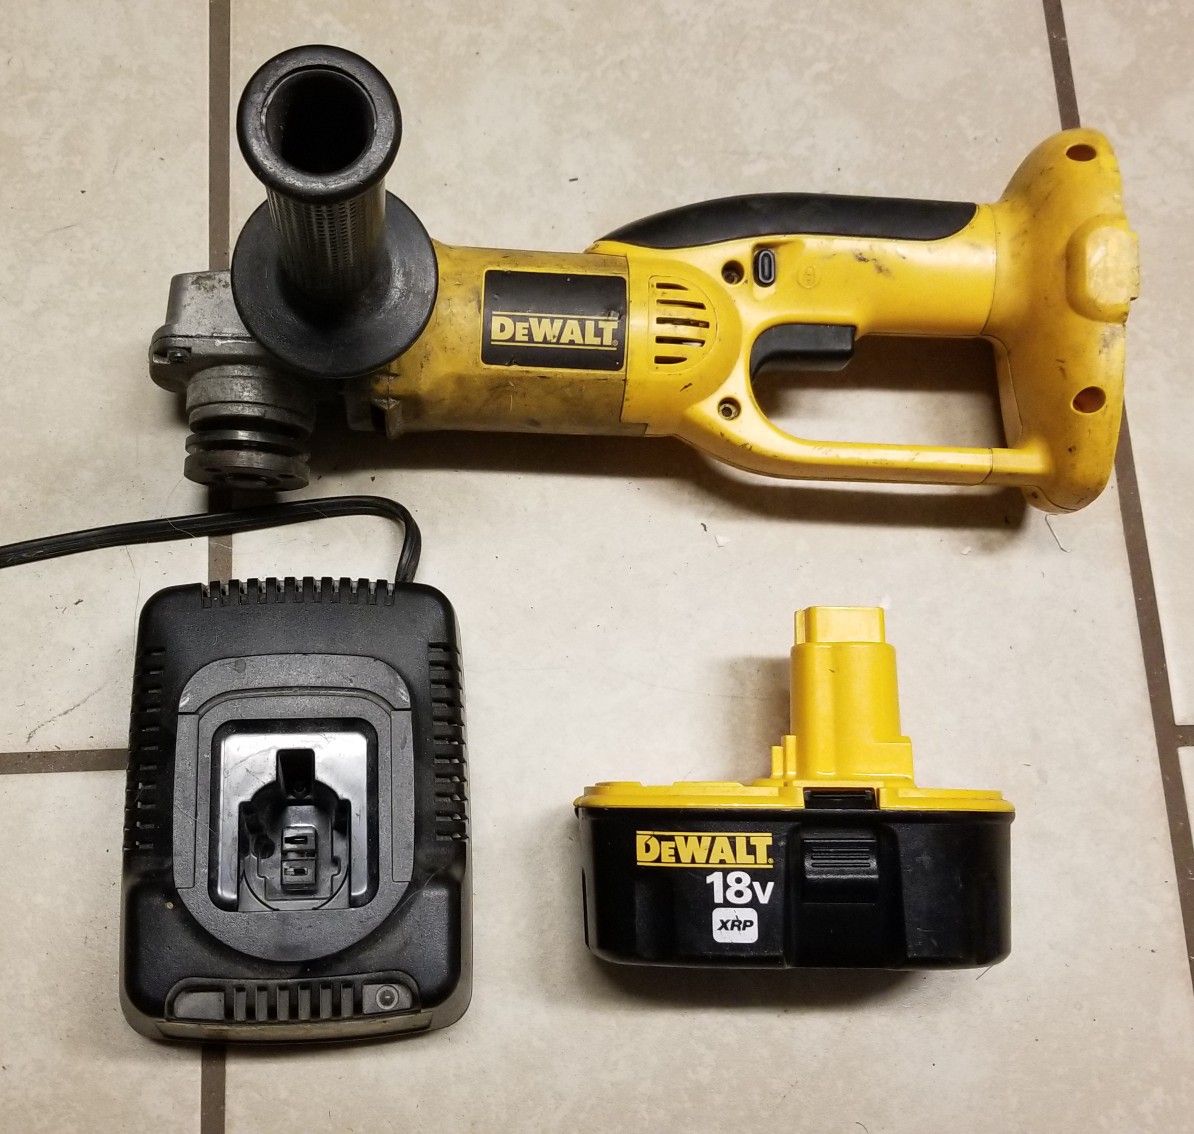 DeWalt 18v grinder, Battery, and charger